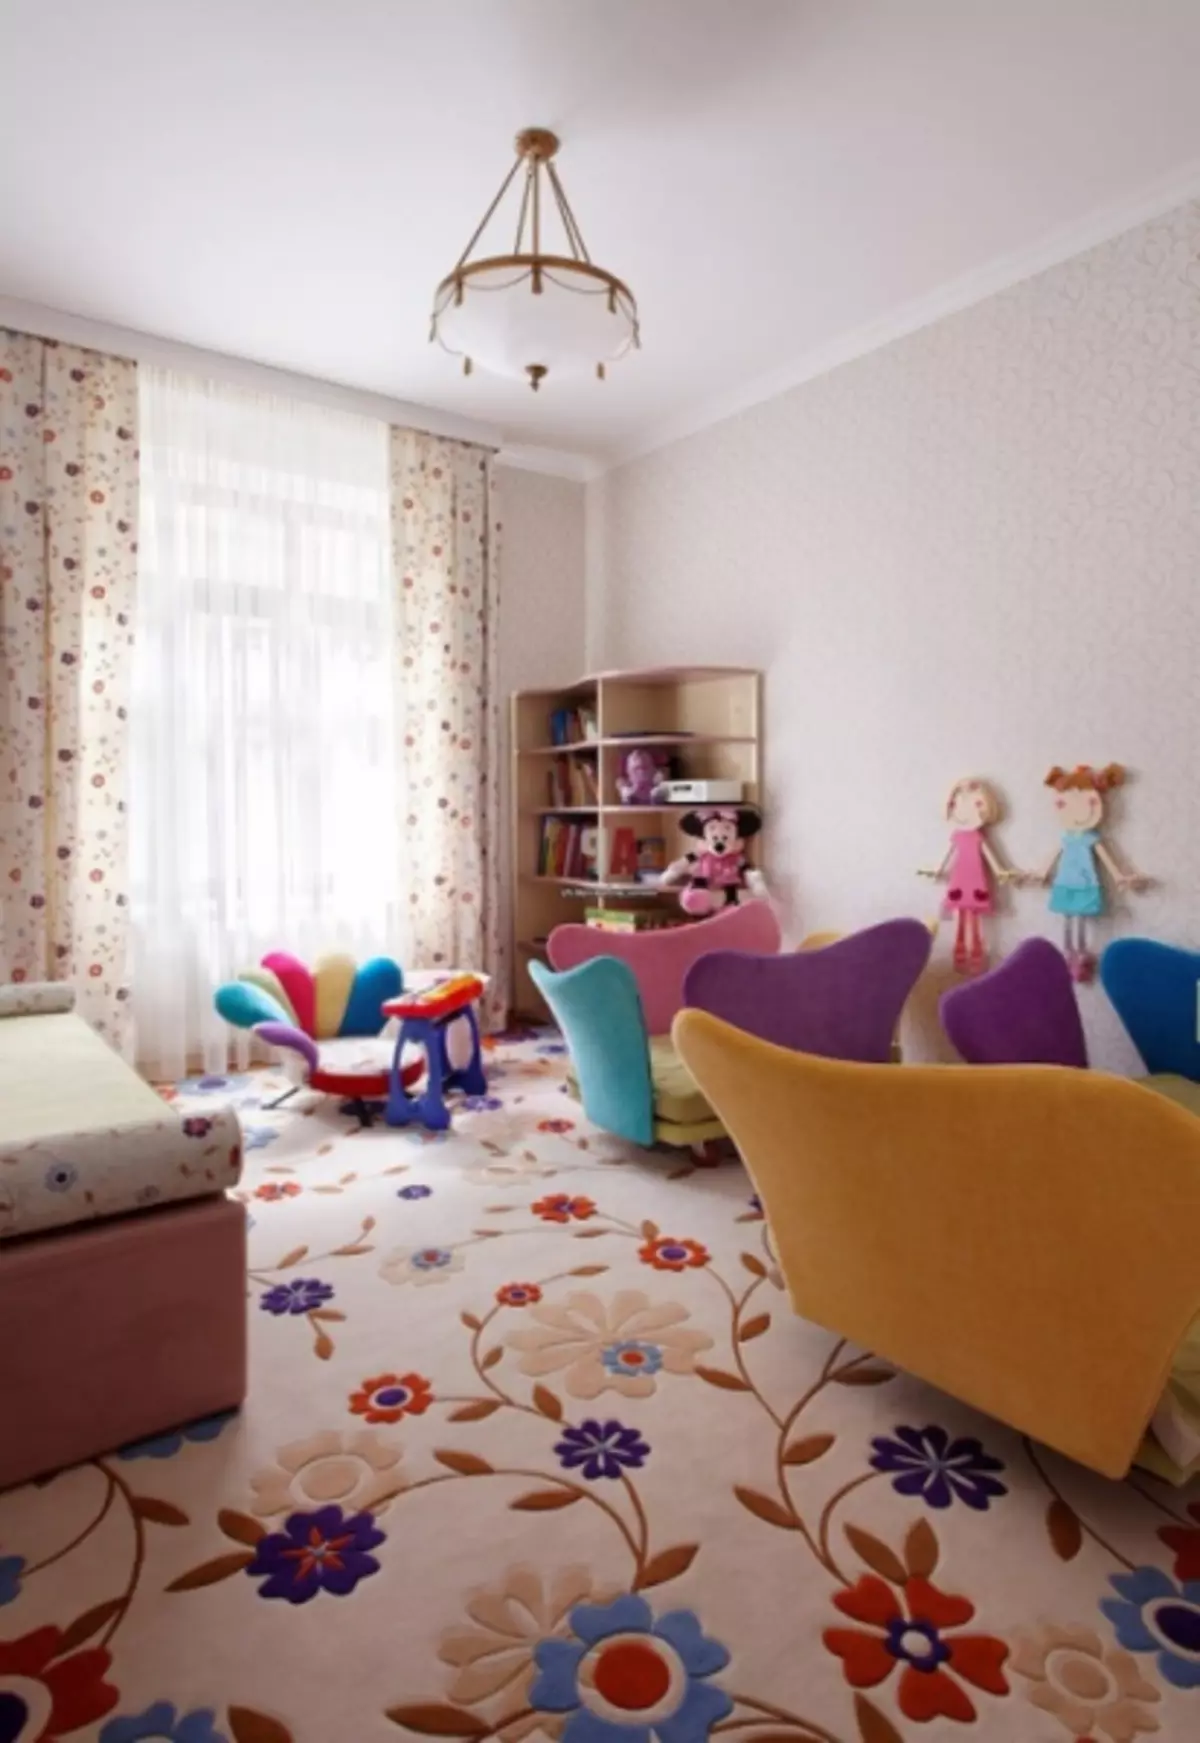 Πώς να χρησιμοποιήσετε τα κλωστοϋφαντουργικά προϊόντα στο εσωτερικό του παιδικού δωματίου (29 φωτογραφίες)